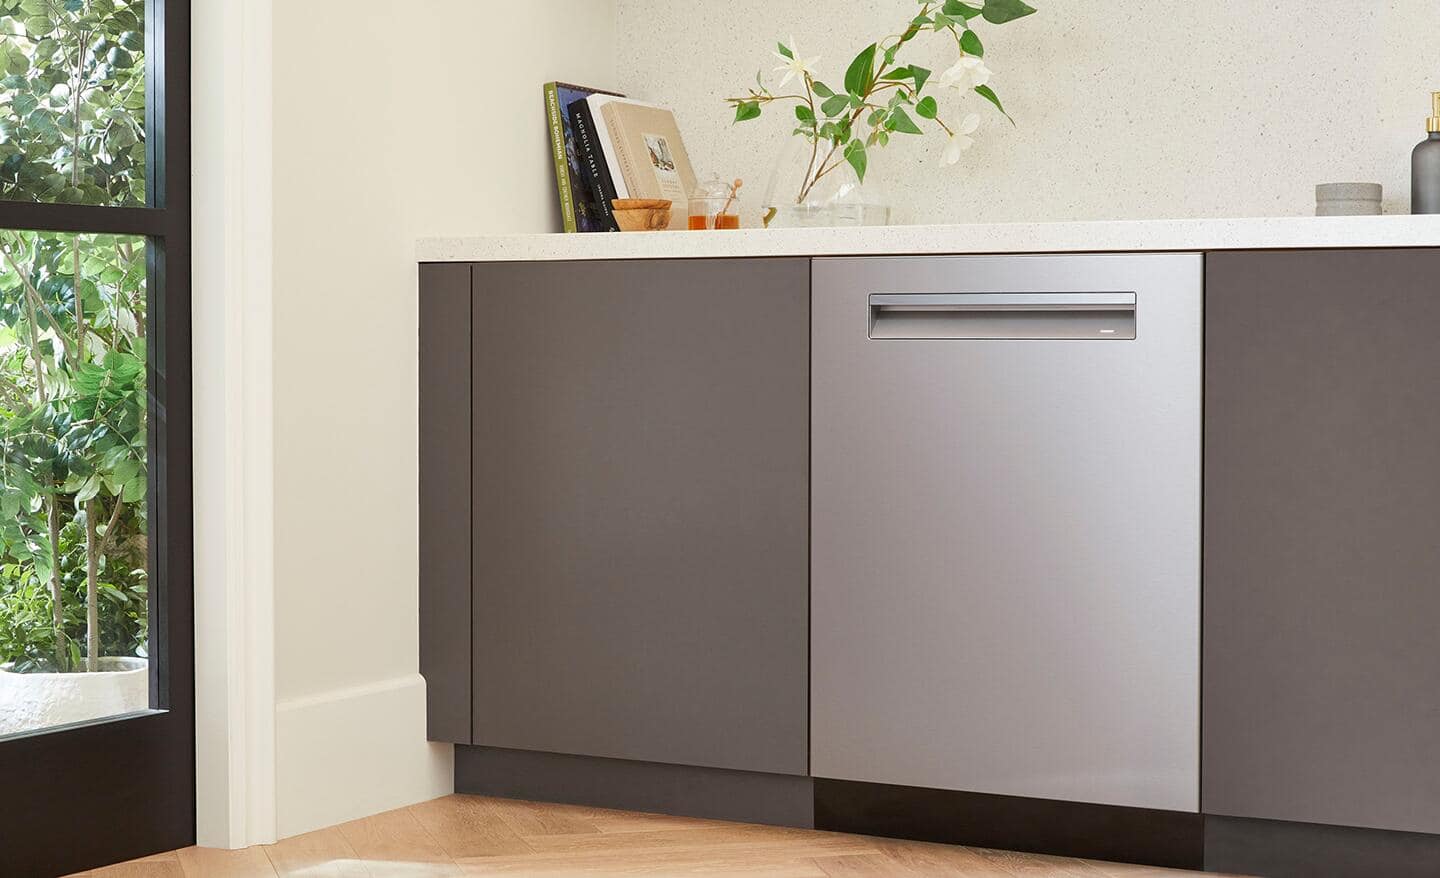 Dishwasher in a sleek kitchen cabinet